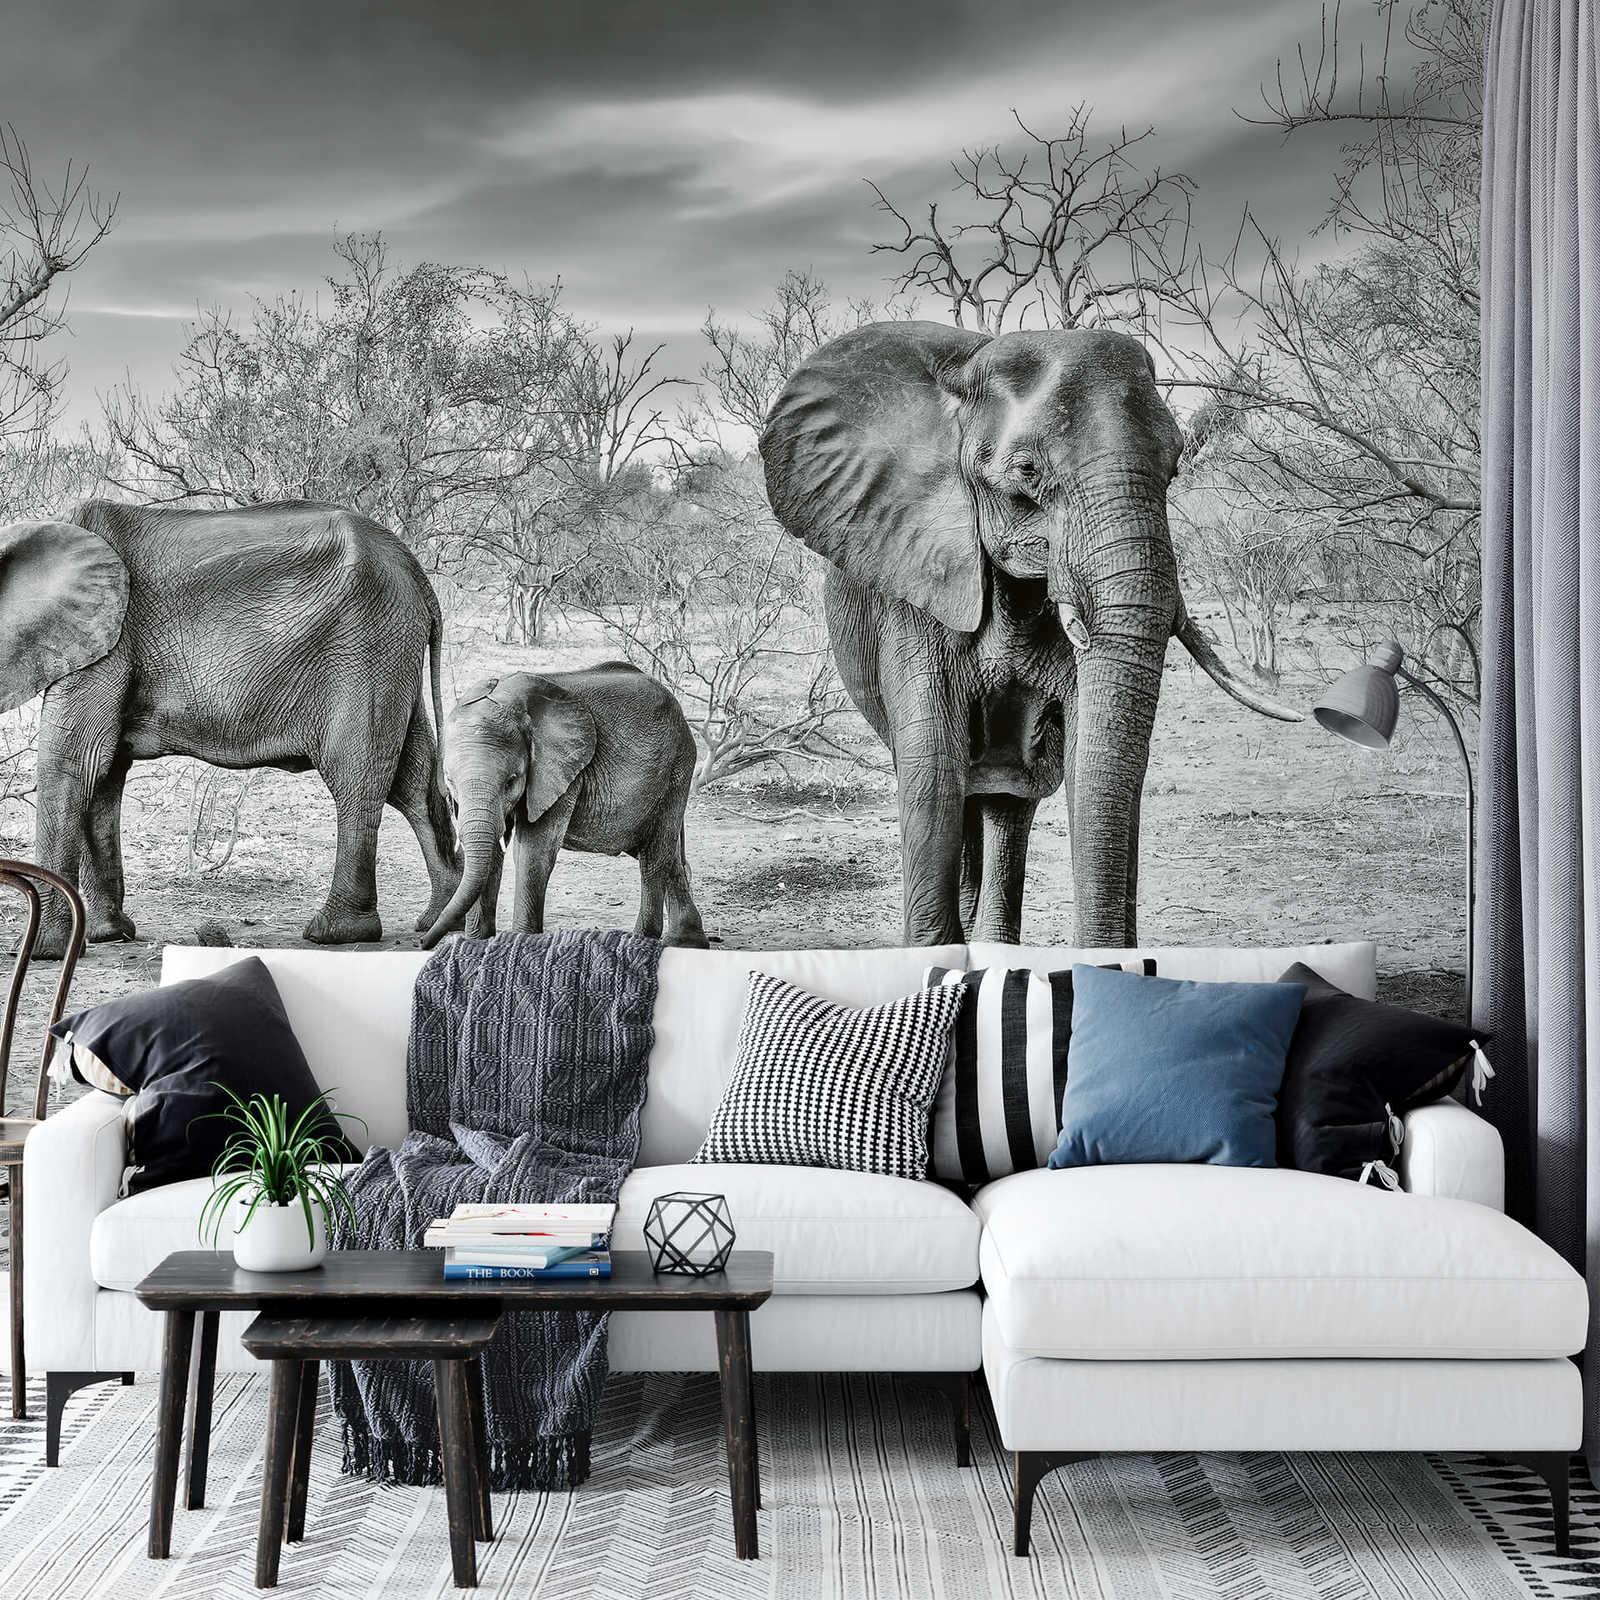             Papier peint famille éléphant - gris, blanc, noir
        